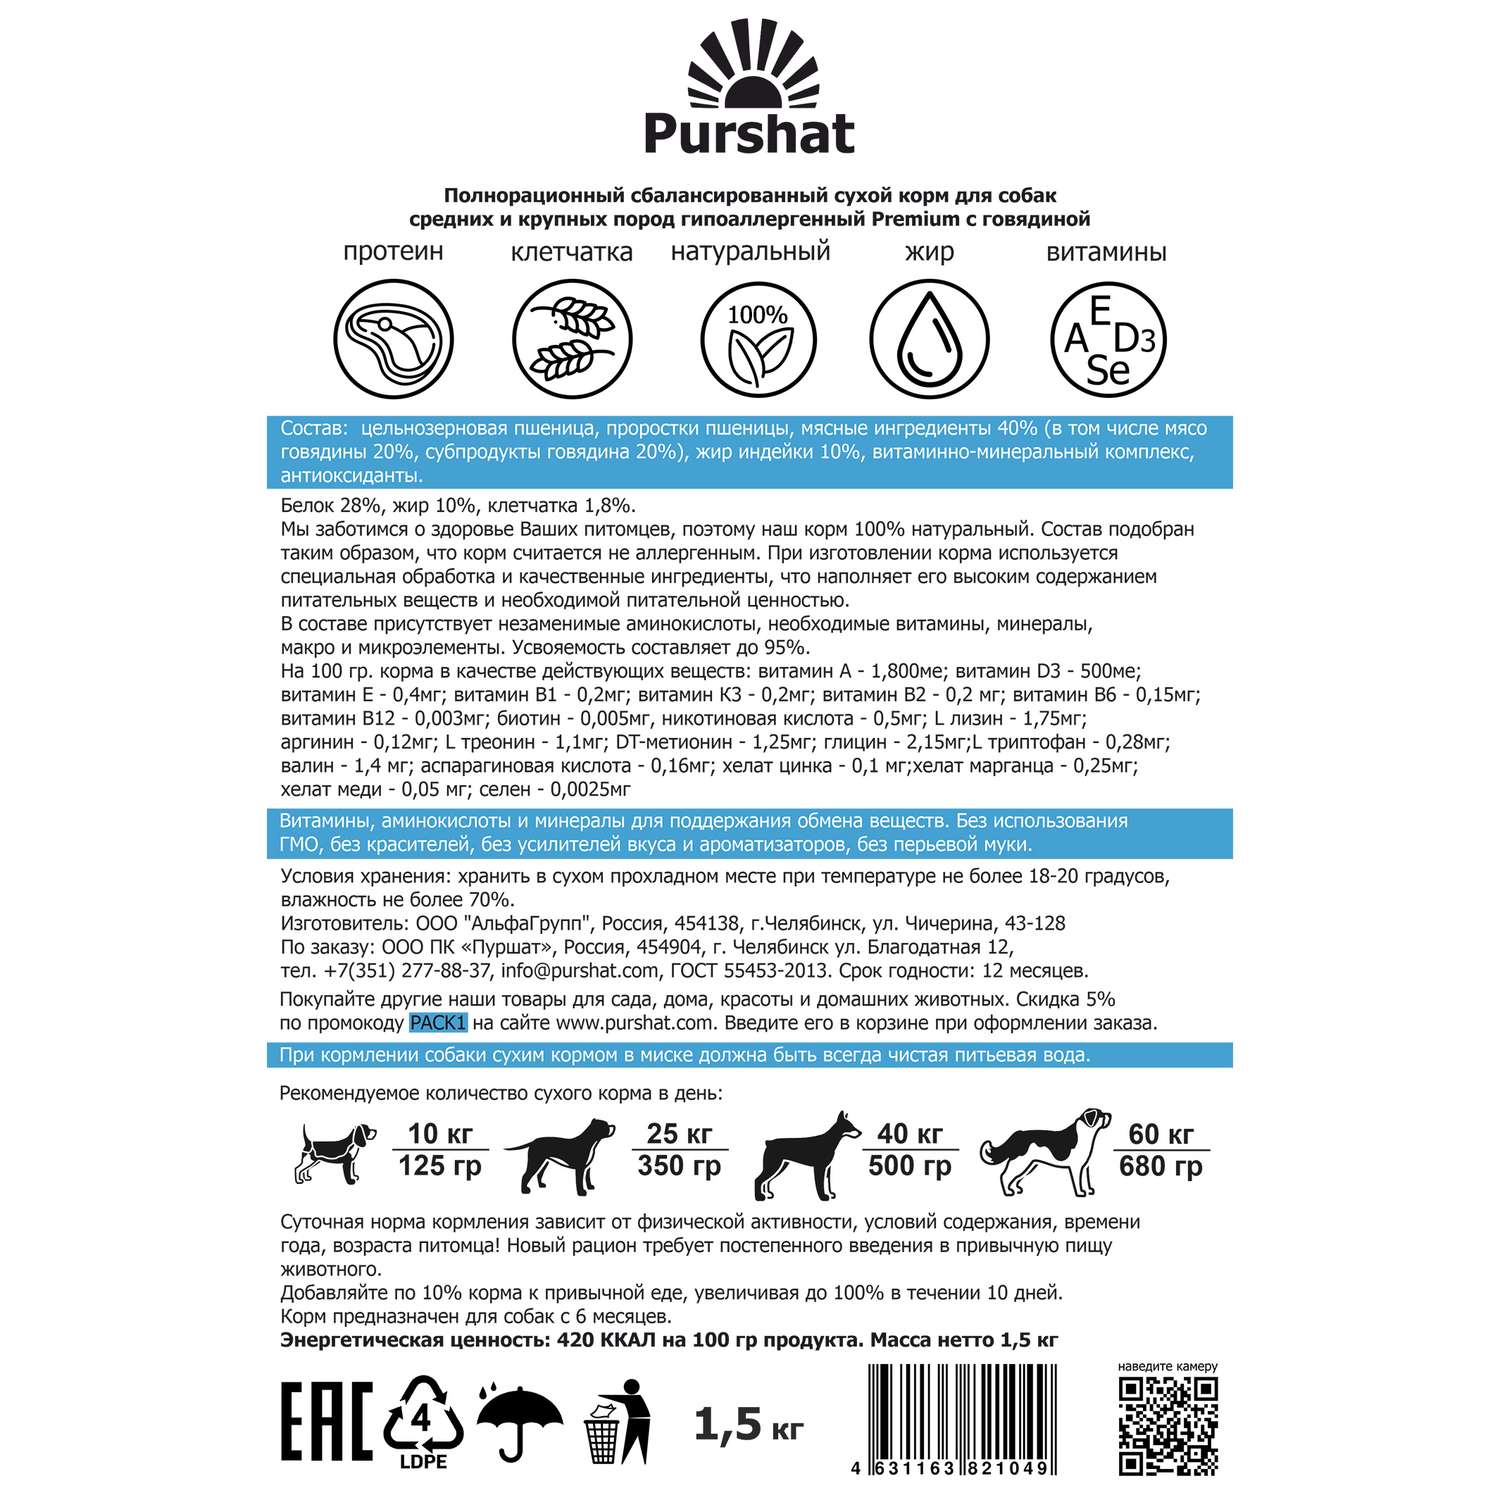 Корм для собак Purshat для средних и крупных пород гипоаллергенный с говядиной 1500 грамм - фото 9